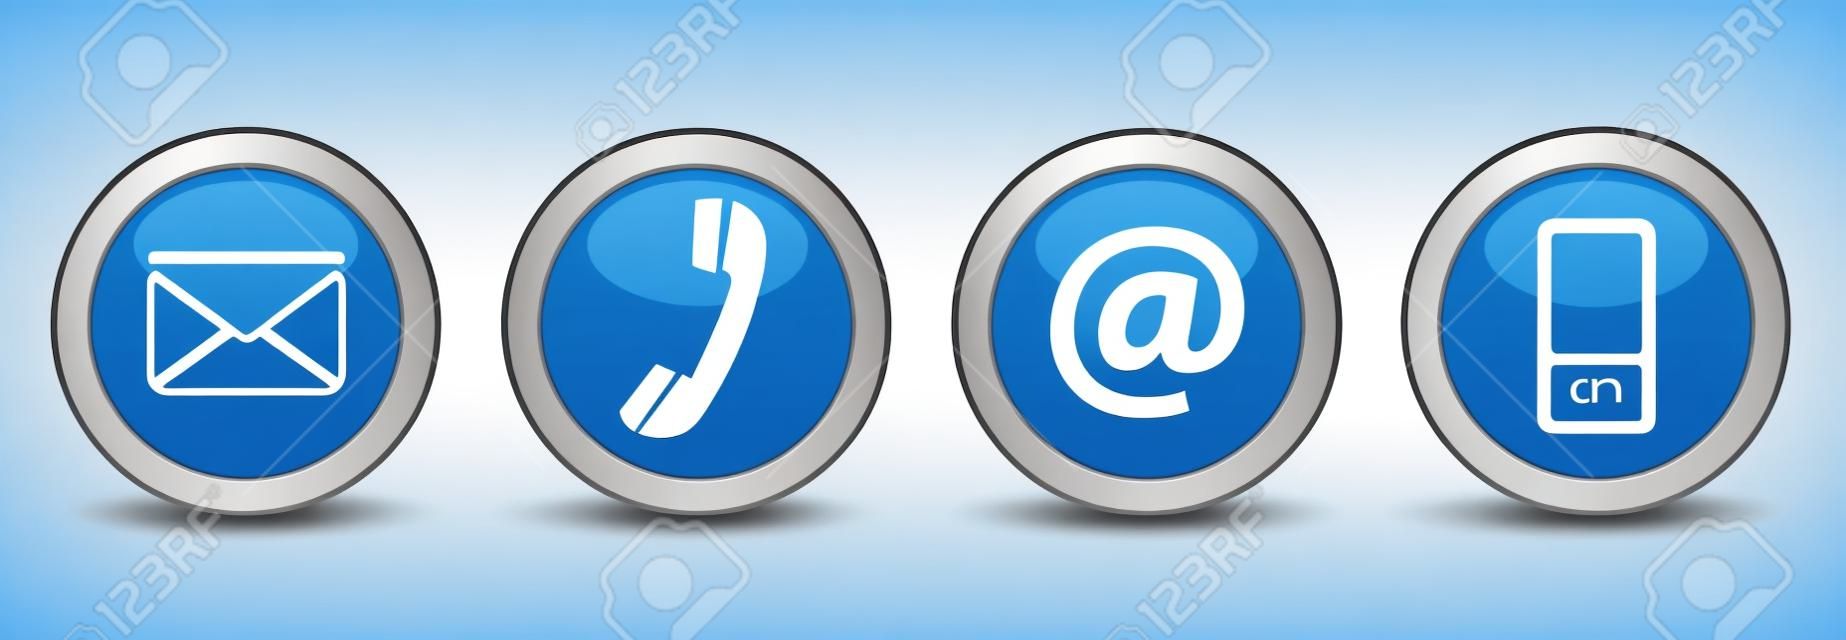 Kontakt Web-Buttons mit E-Mail gesetzt, an, Telefon und Handy-Symbole auf blauem Silberabzeichen EPS 10-Illustration isoliert auf weißem Hintergrund.